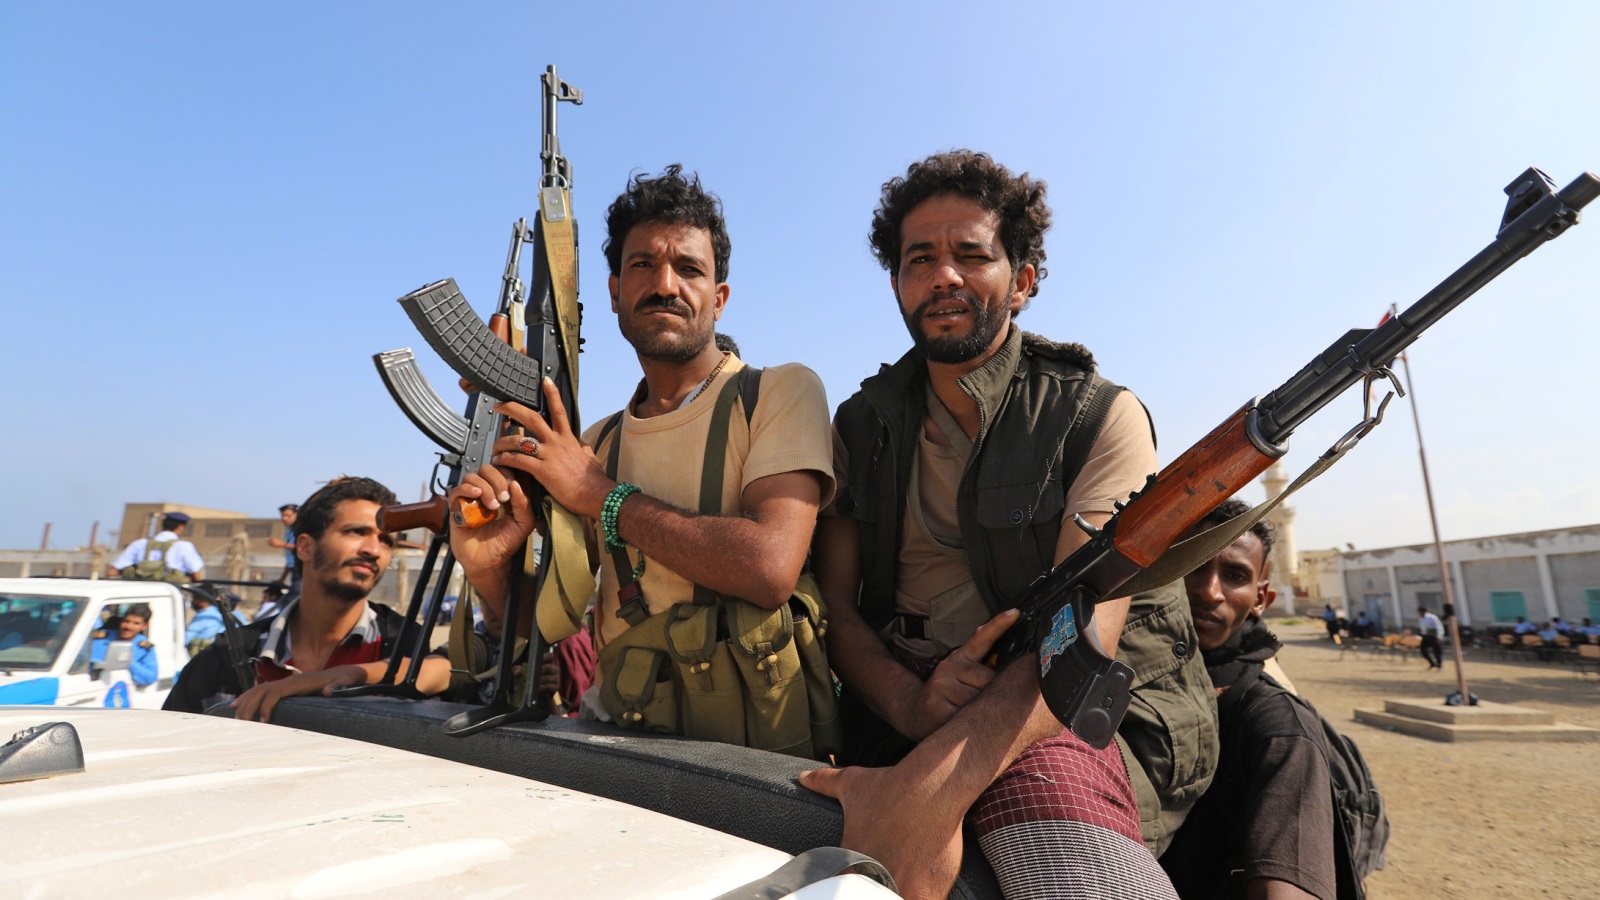 ‪الكاتب: تورط السعودية في النزاع اليمني قوّى على ما يبدو شوكة أعدائها هناك من حيث سعت إلى الوقوف في وجههم‬ (رويترز)